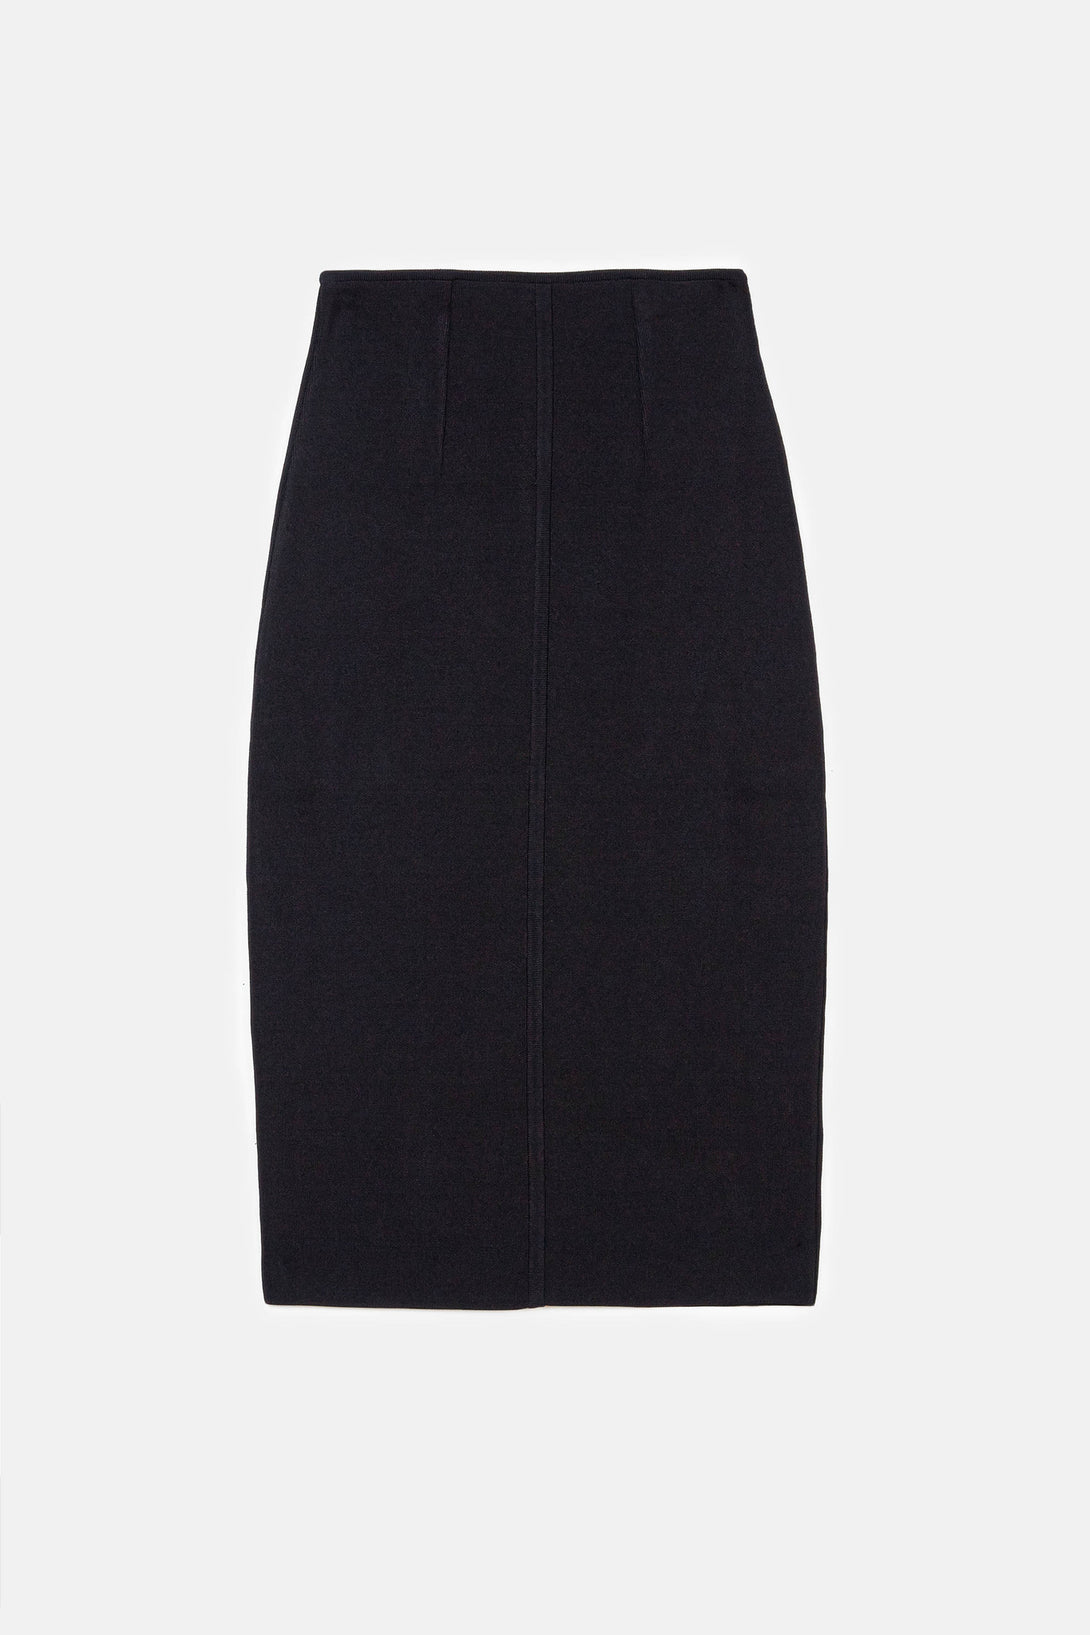 long black knit skirt